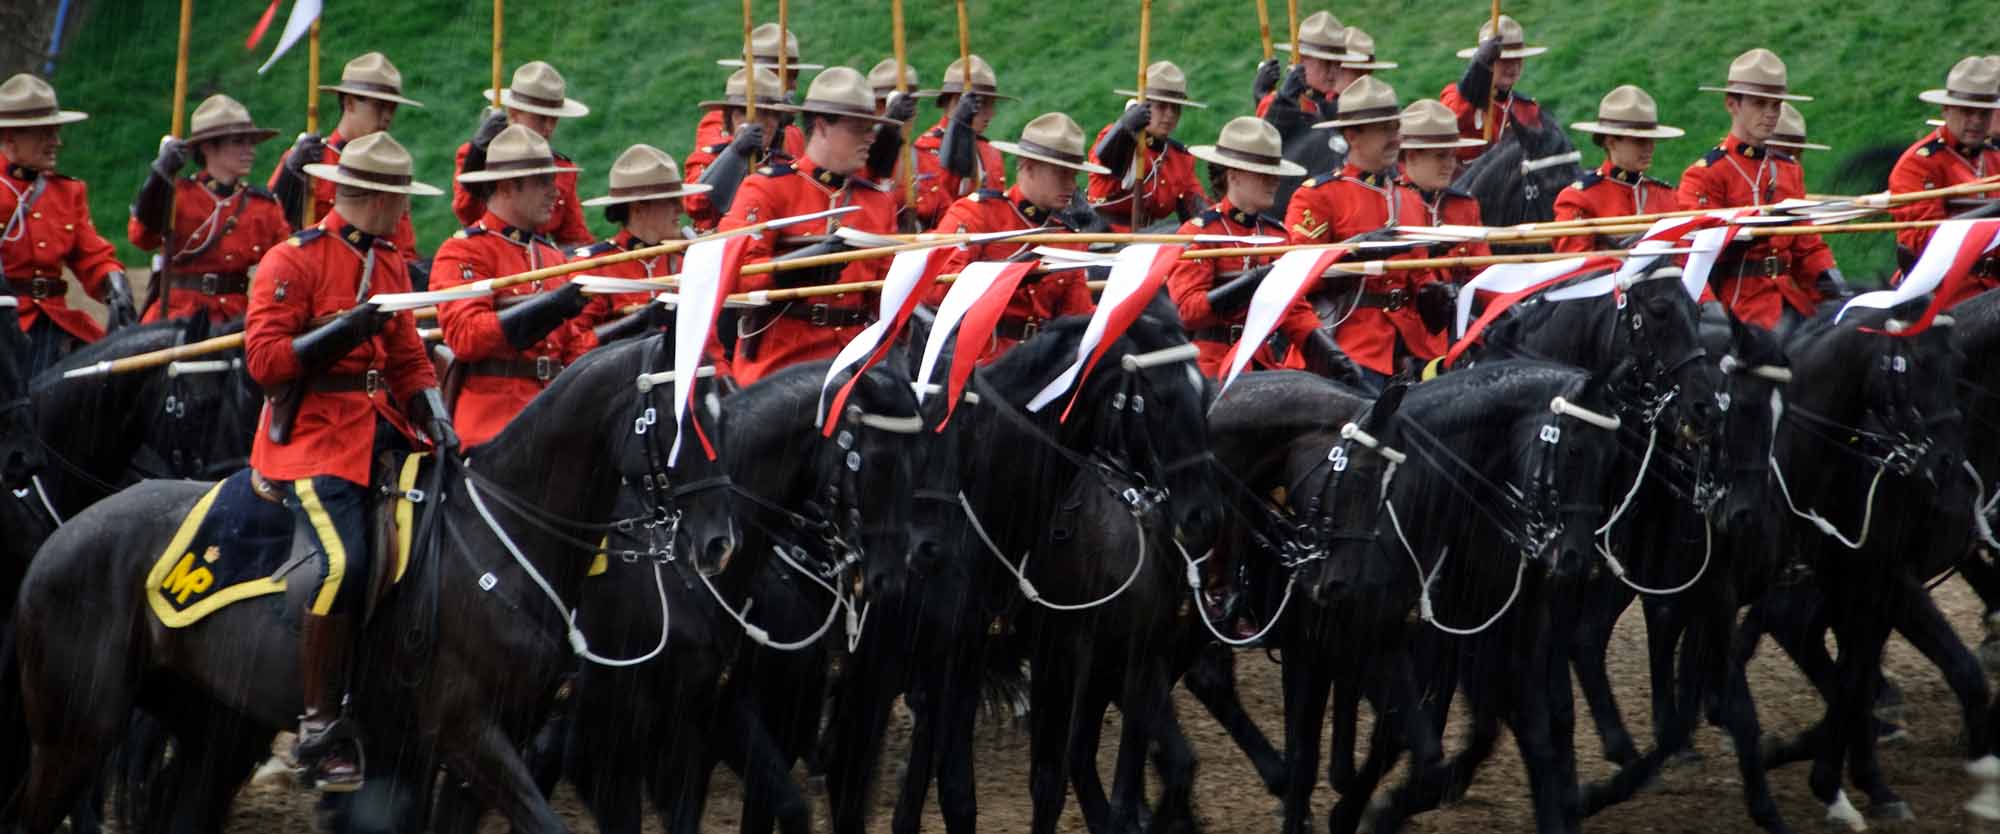 Королевская канадская конная полиция (RCMP) недавно стала жертвой кибератаки